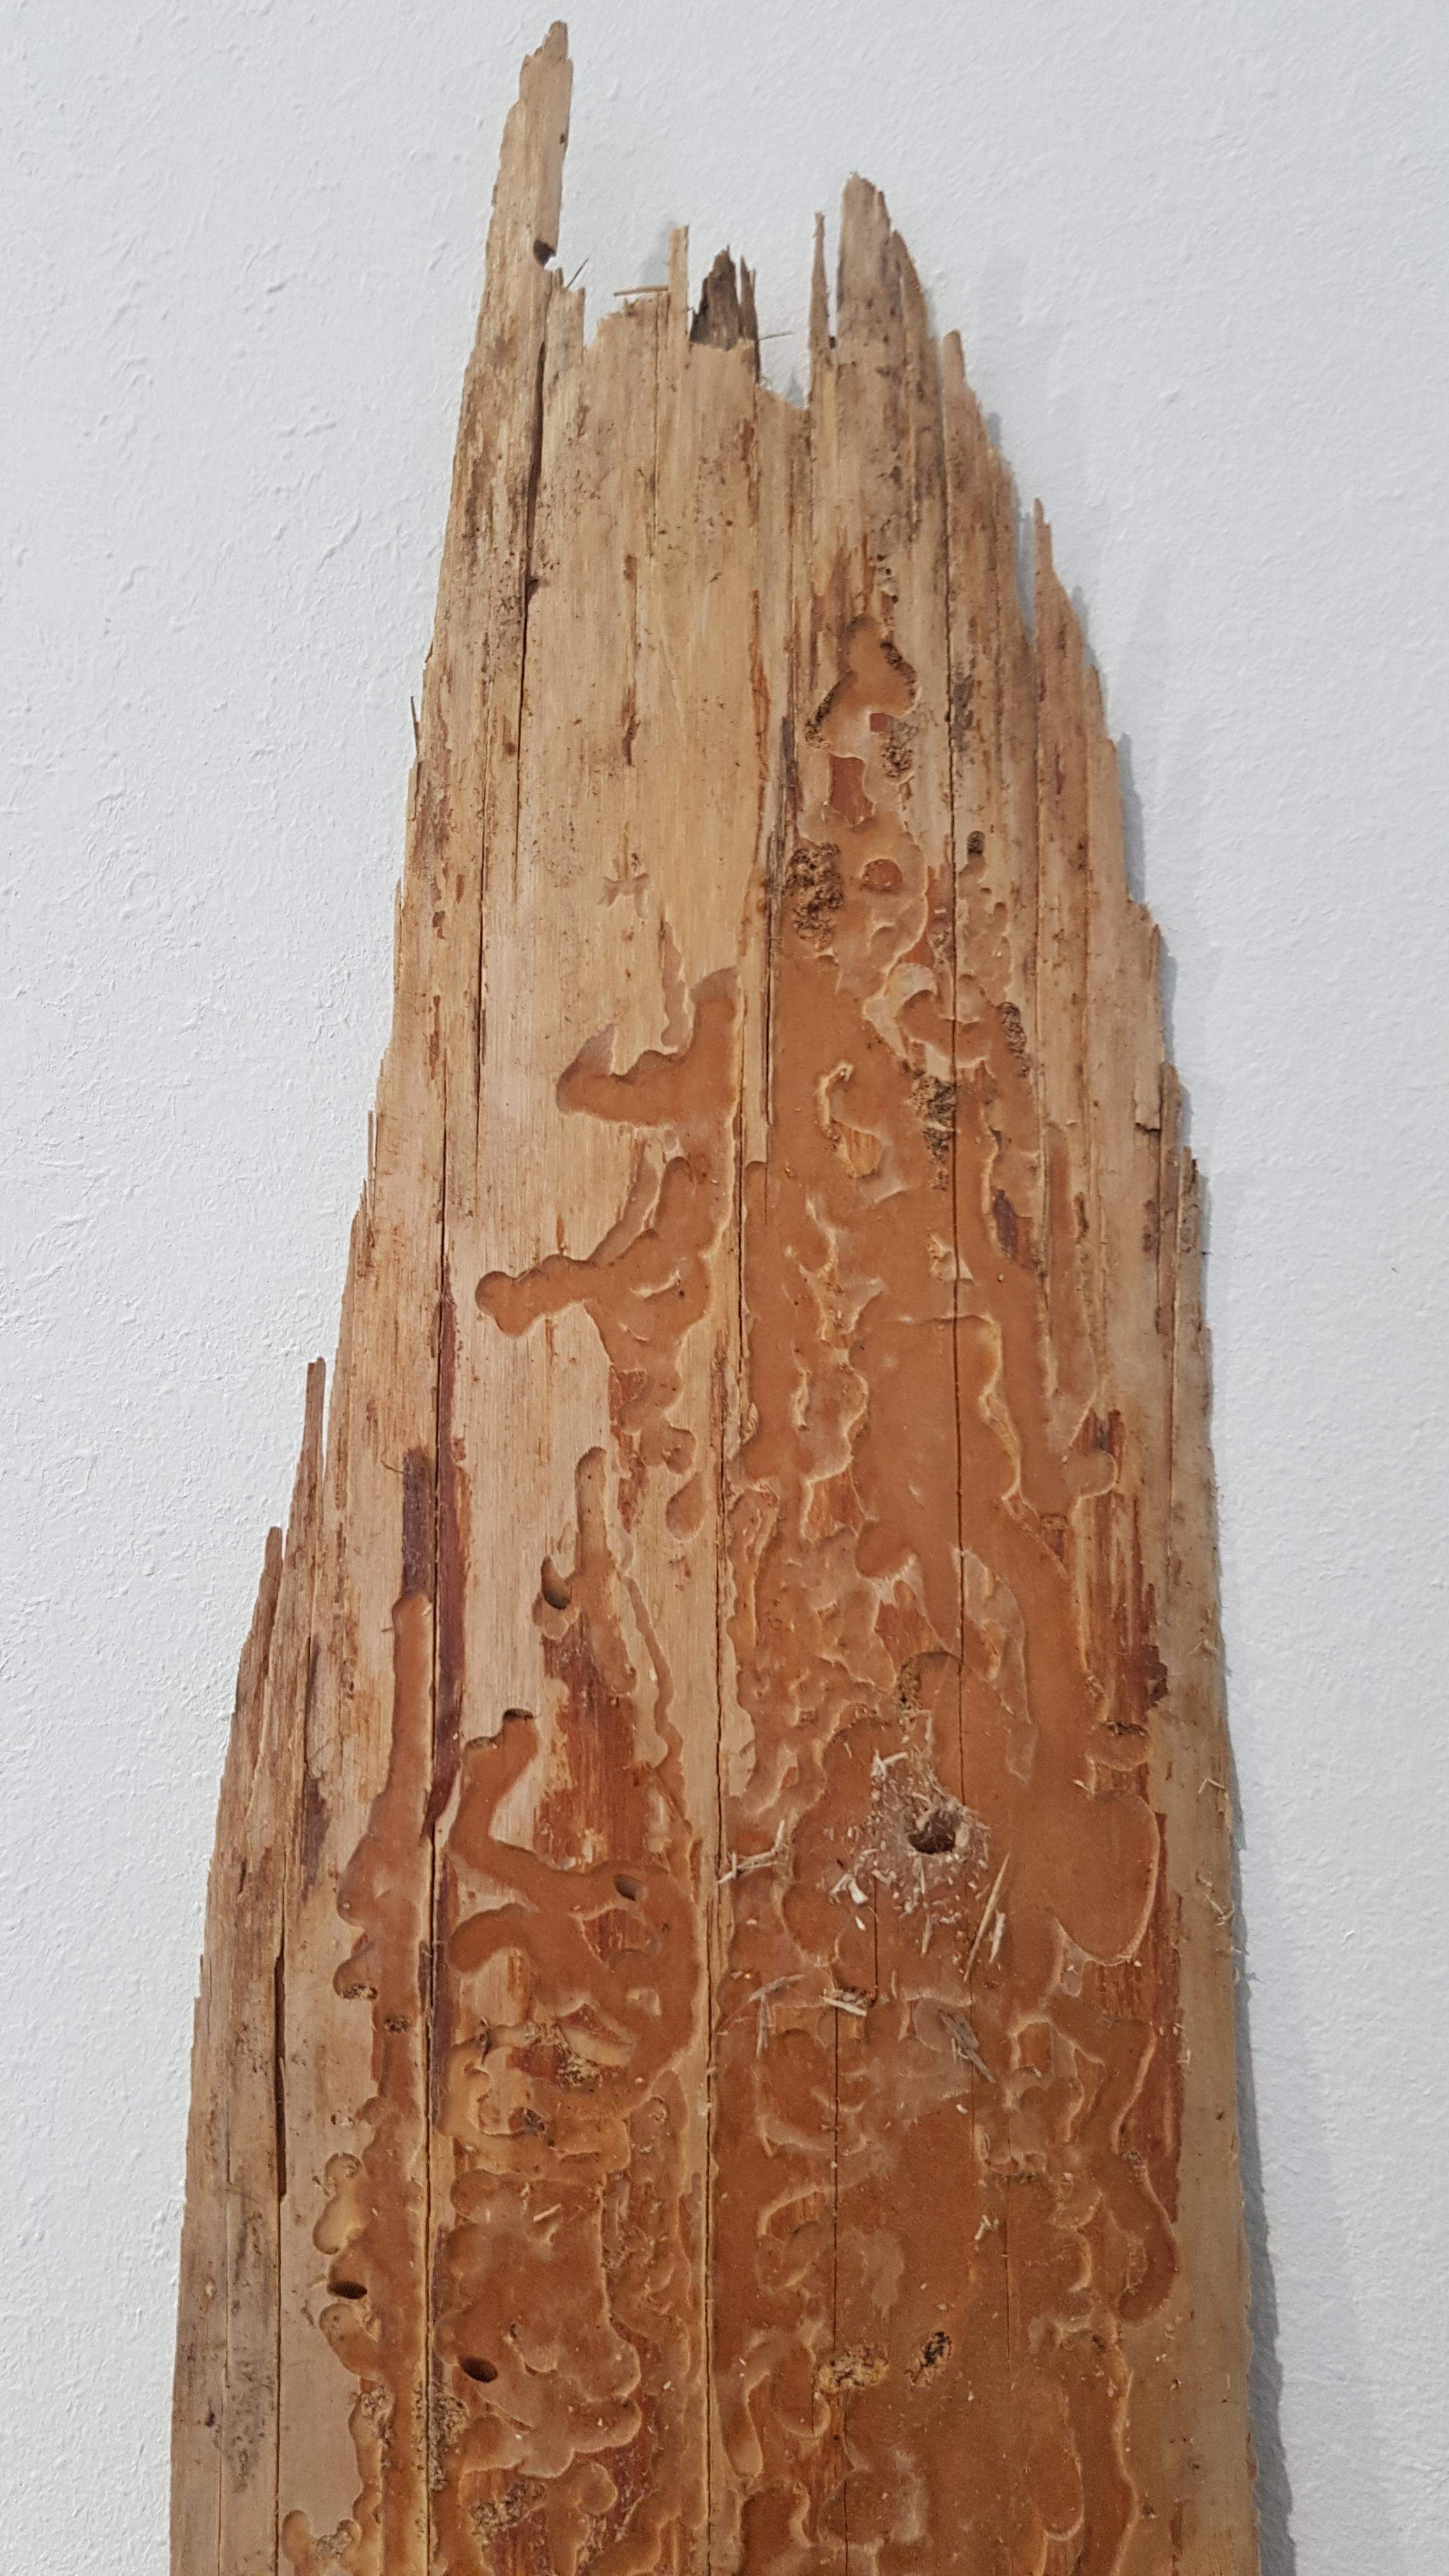 tracce della attività distruttiva di questo parassita del legno